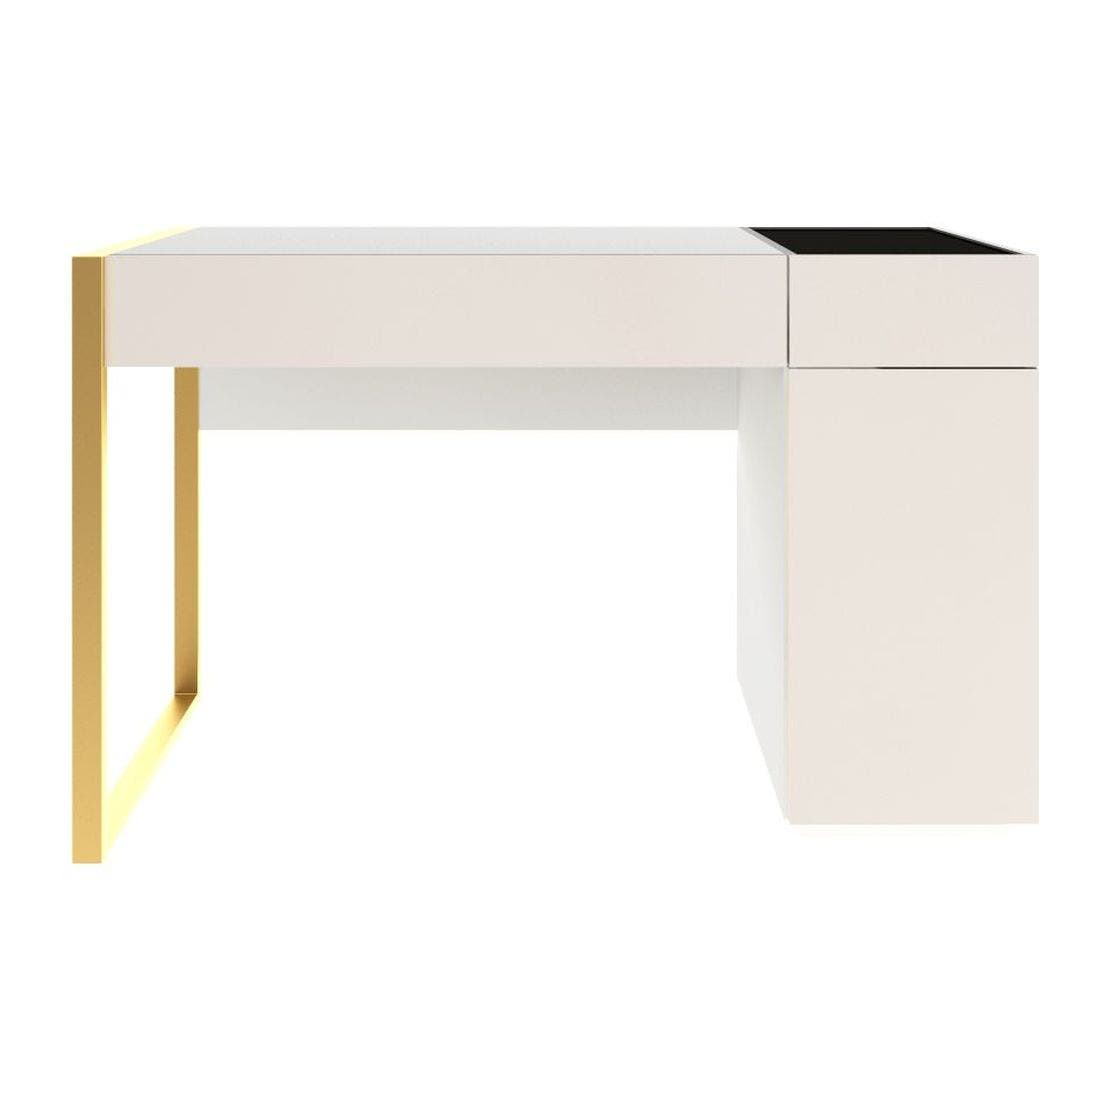 ชุดห้องนอน โต๊ะเครื่องแป้งแบบนั่ง รุ่น Heztiara สีสีขาว-SB Design Square